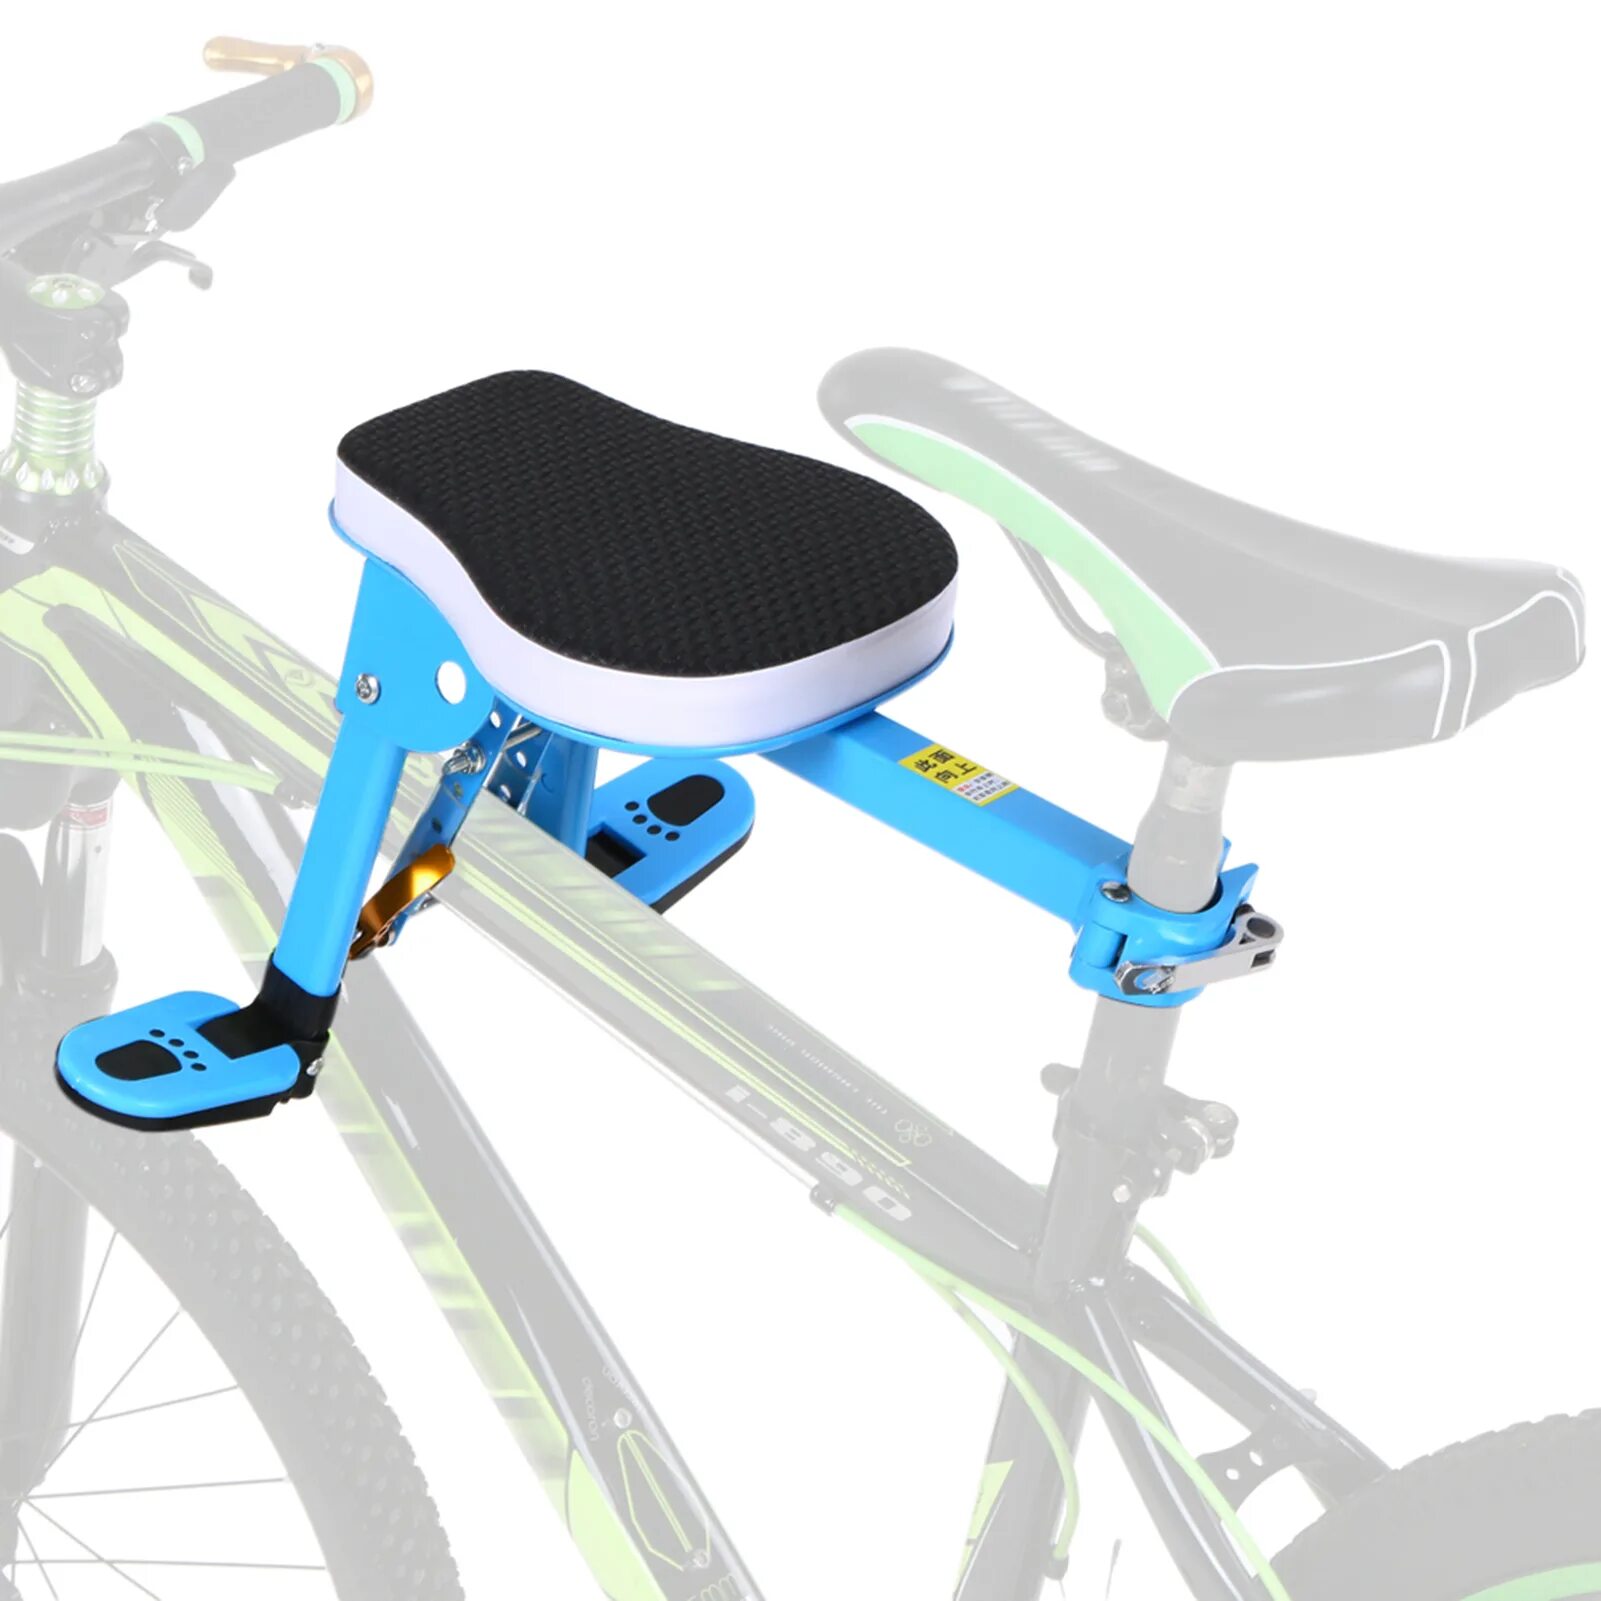 Bh3a Baby Safety Seat for Bicycle BH 3a детское велосипедное сиденье синее. Saddle сиденье велосипедное детское. Front Mounted child Bike Seat. Велосипед с силушкой для ребёнка. Подставка для ног на велосипед